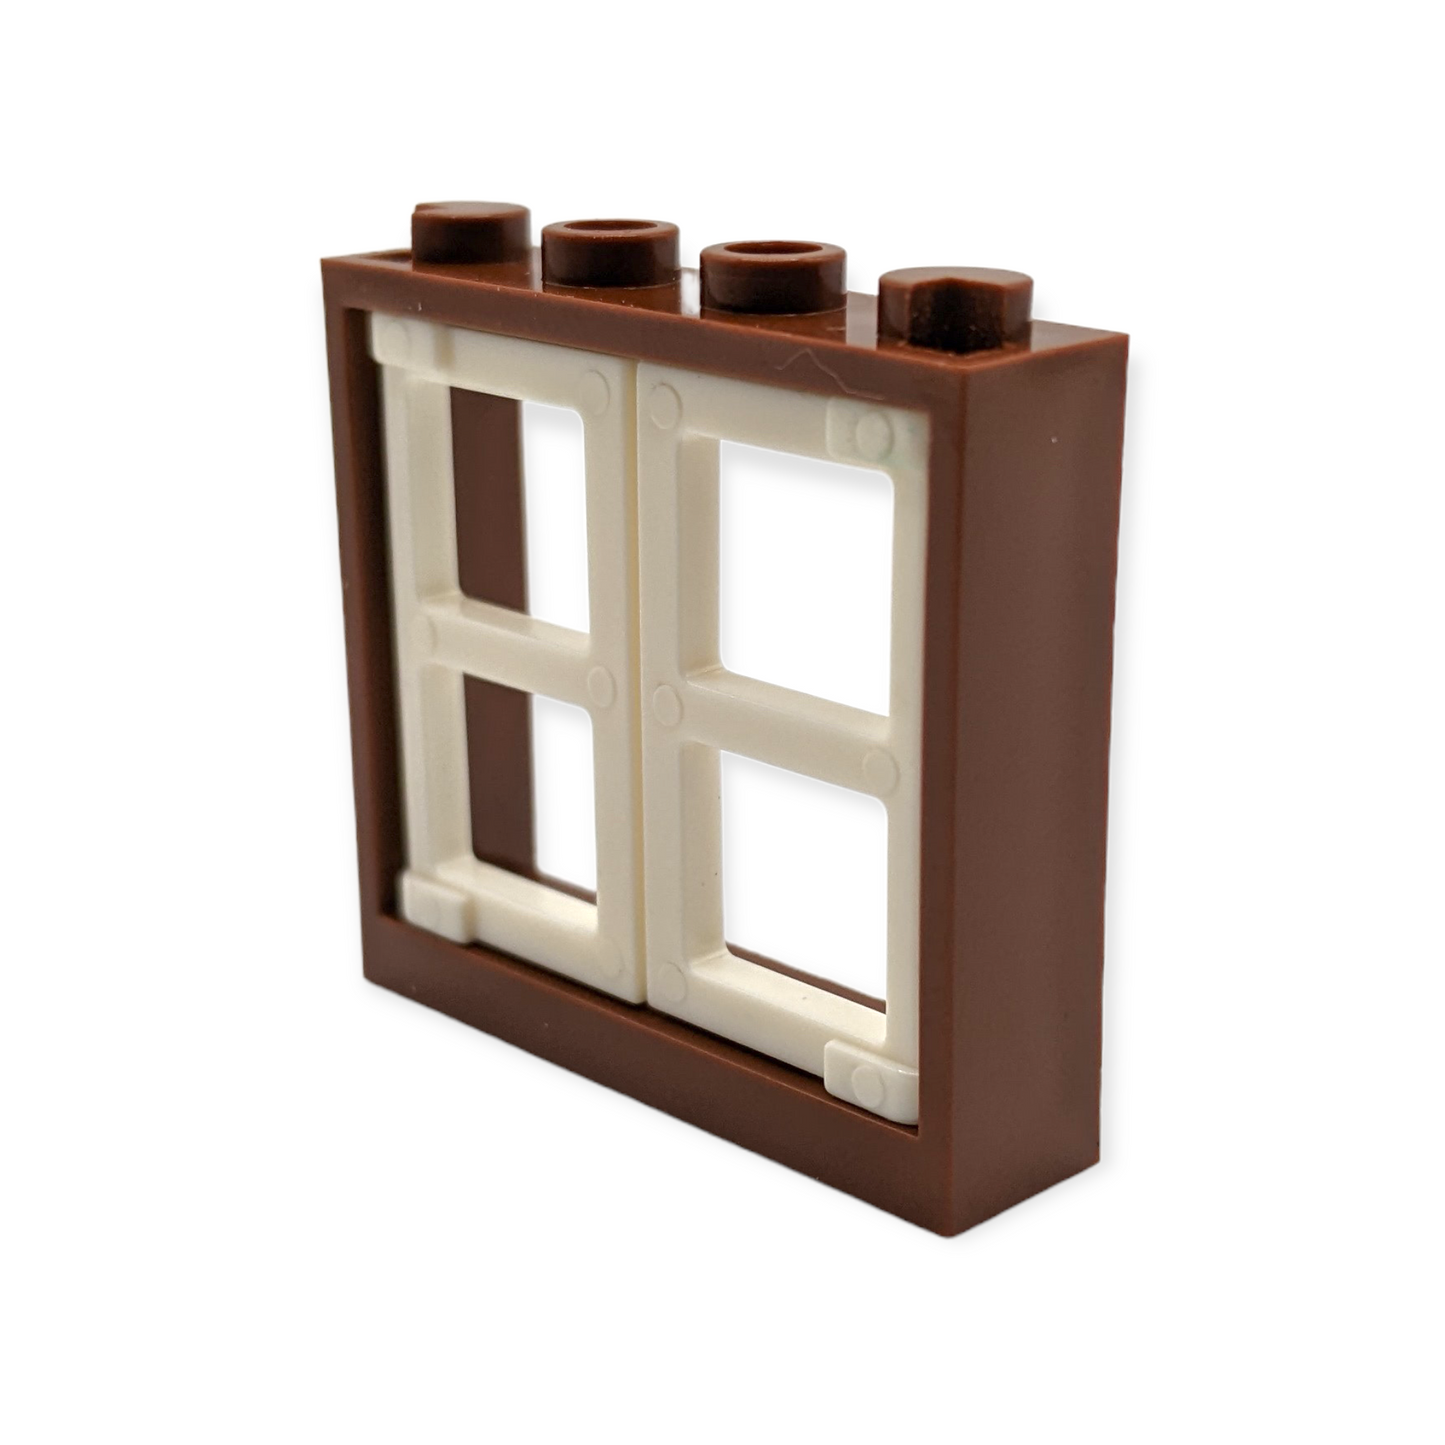 Fensterrahmen 1x4x3 in Braun mit weißen Fenstern